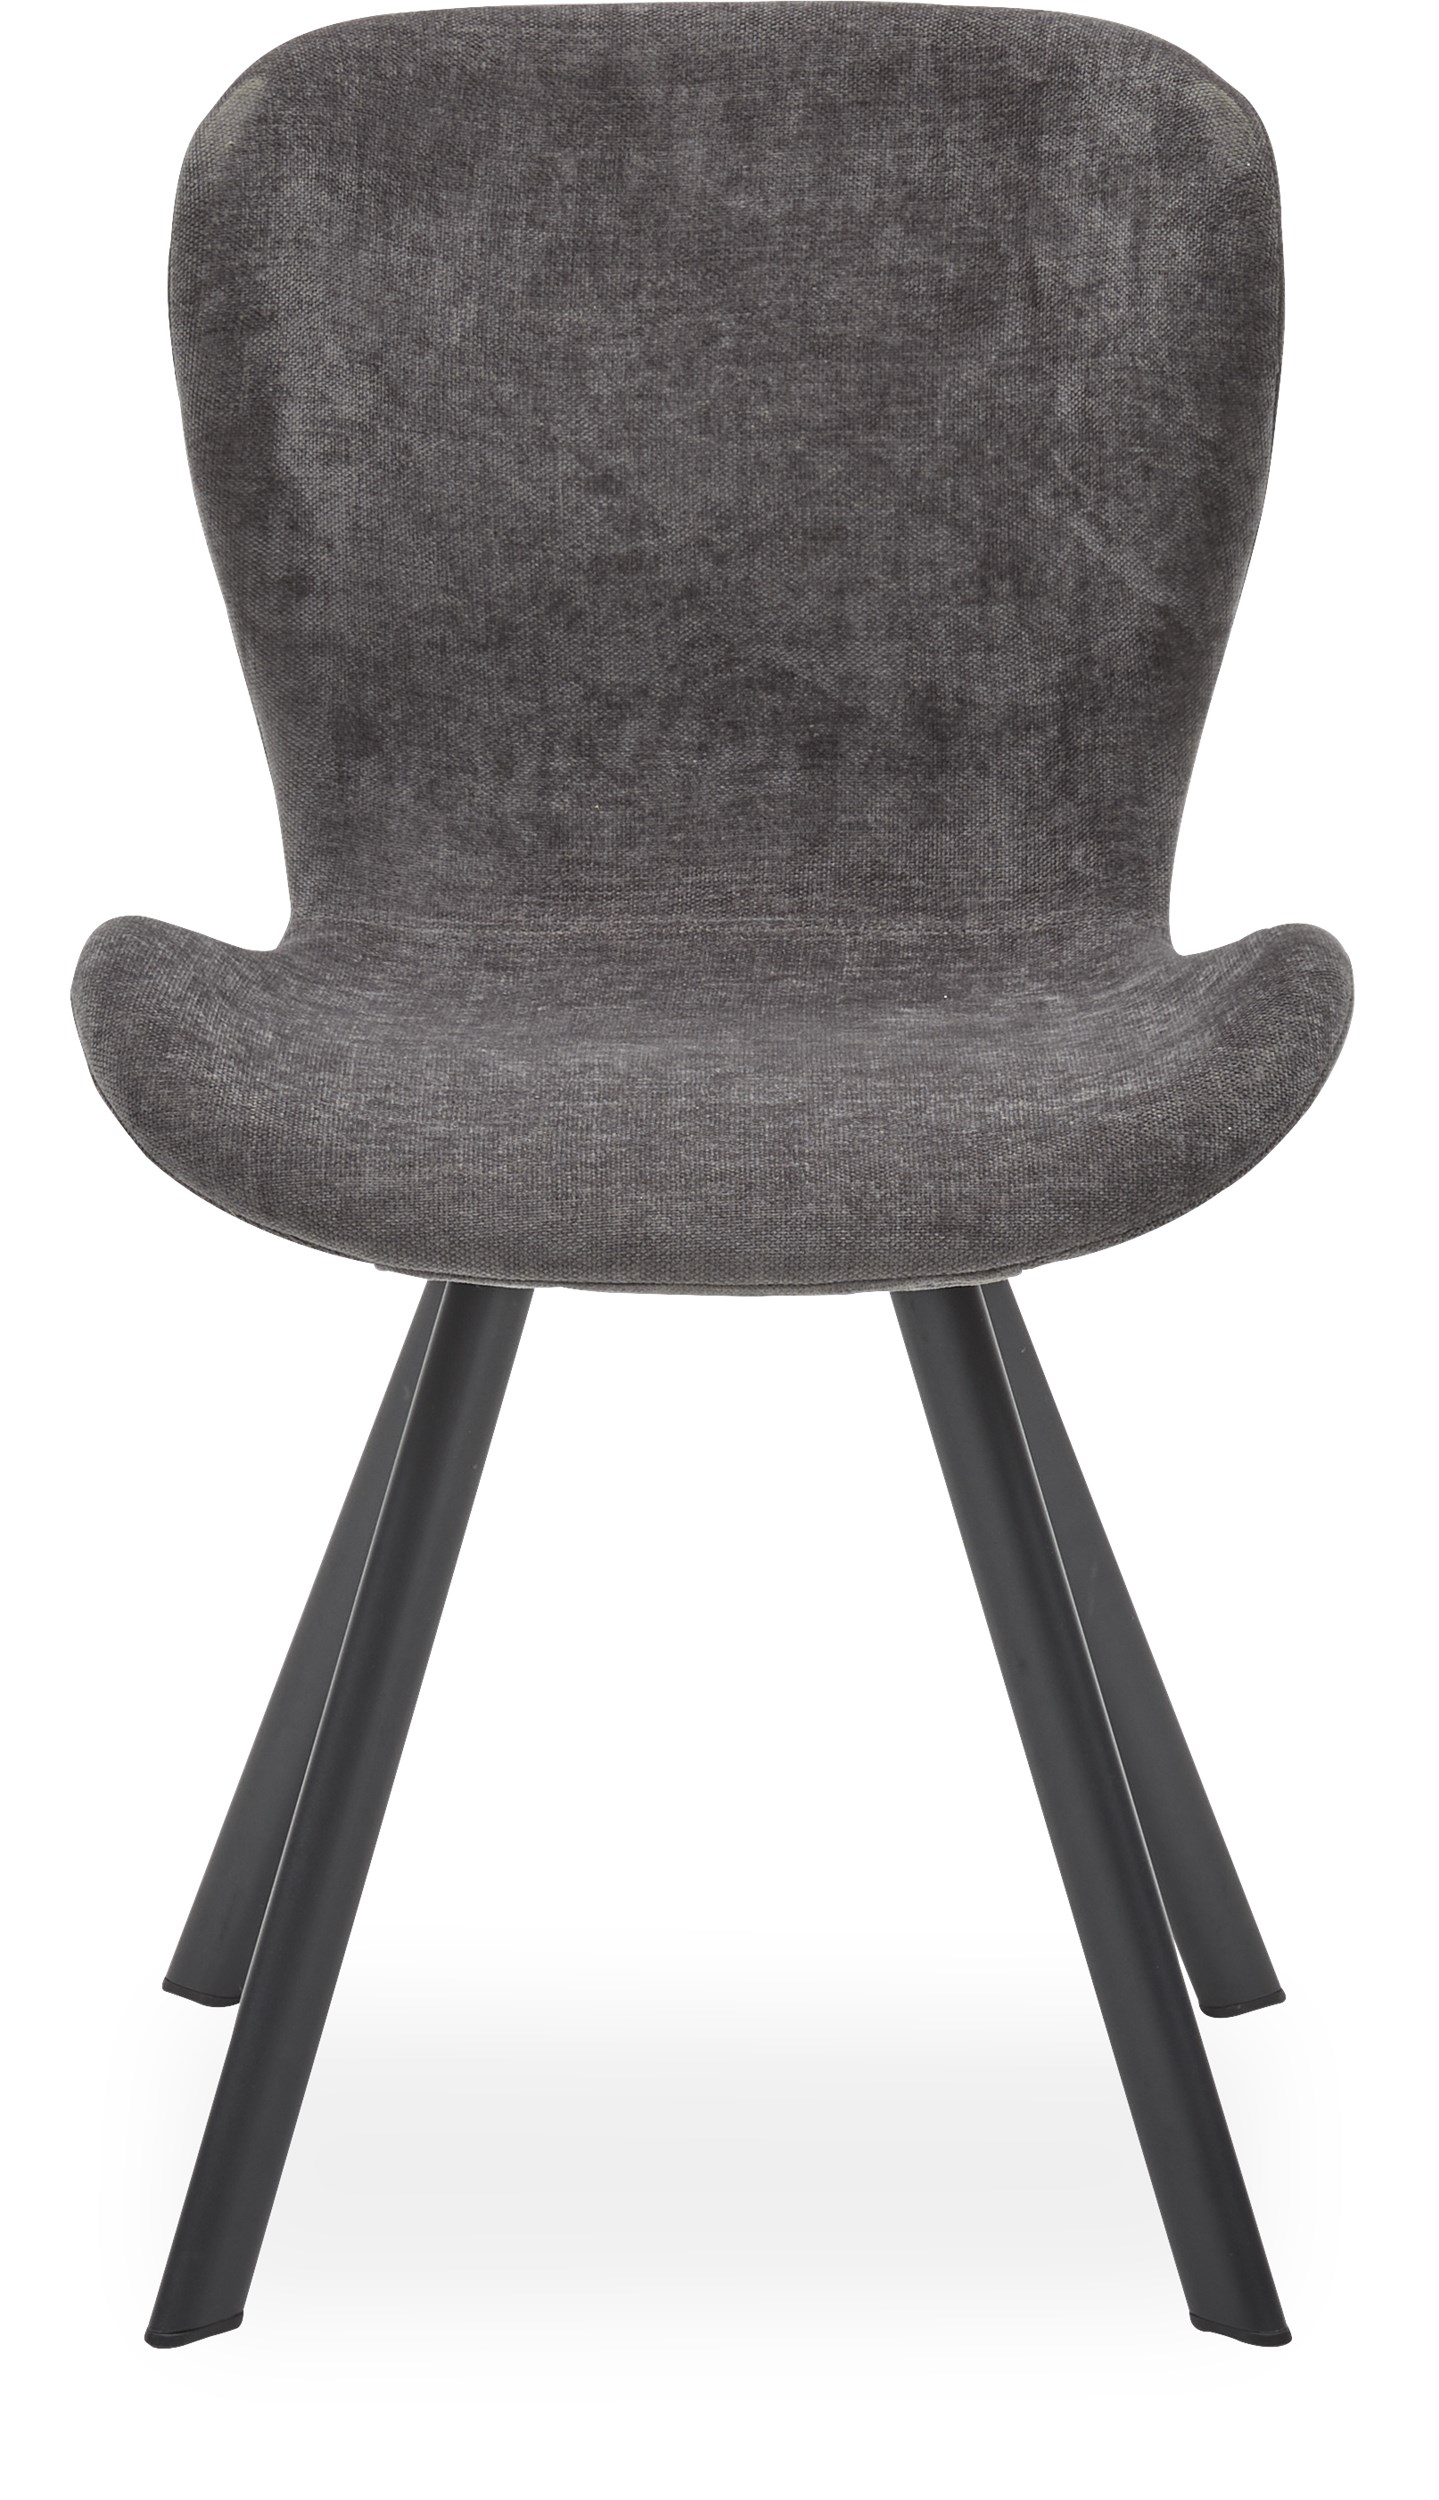 Ally matstol - Sits i mörkgrå textil och ben i svart pulverlackerad metall